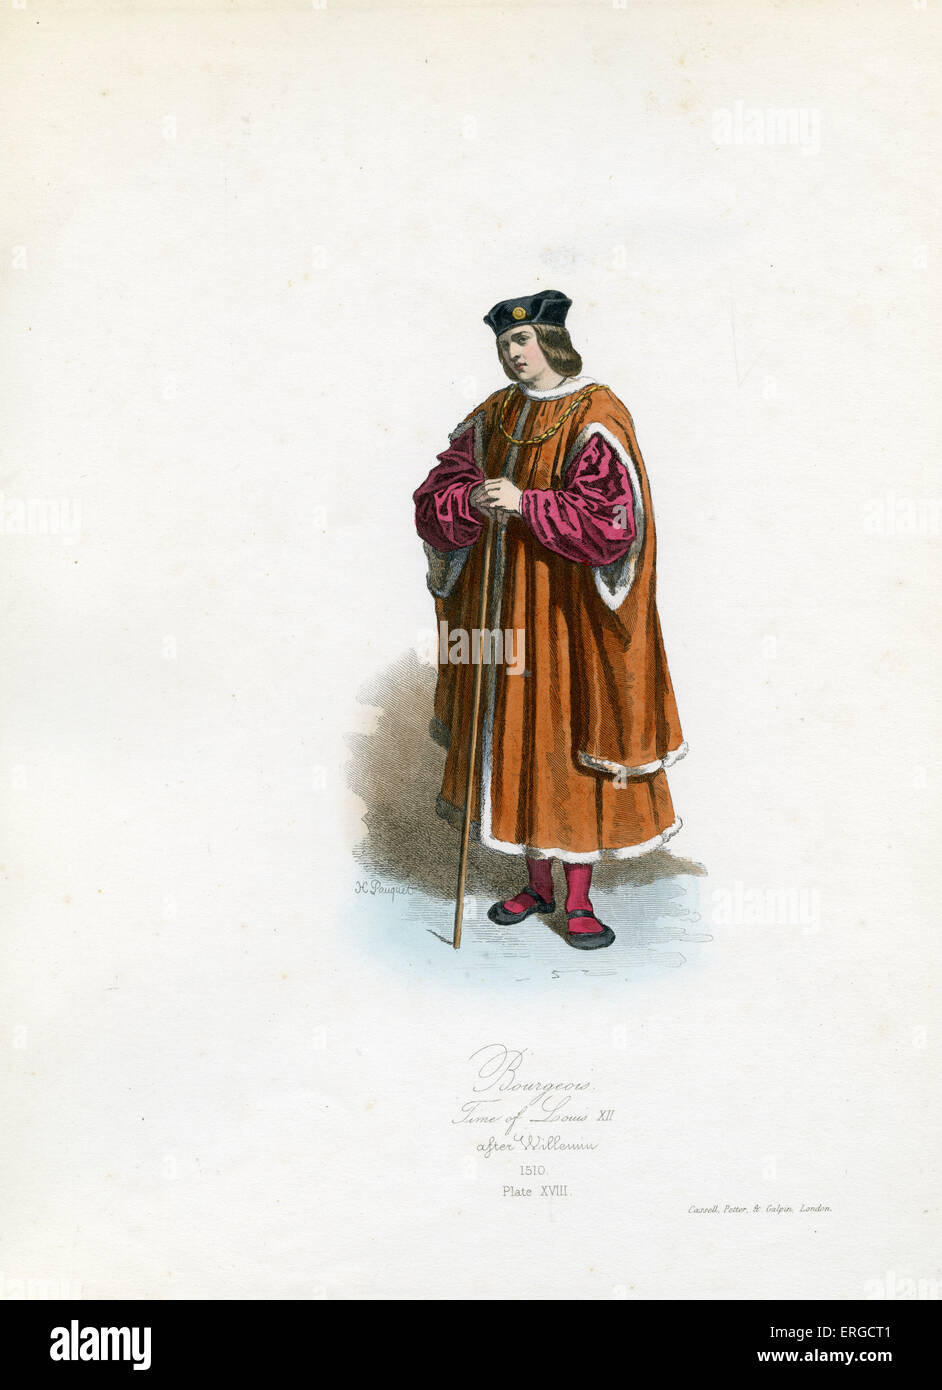 Bourgeois uomo francese dal regno di Luigi XII, 1510. Da incisione di Hippolyte Pauquet dopo Willemin. In feudo, pre- Foto Stock